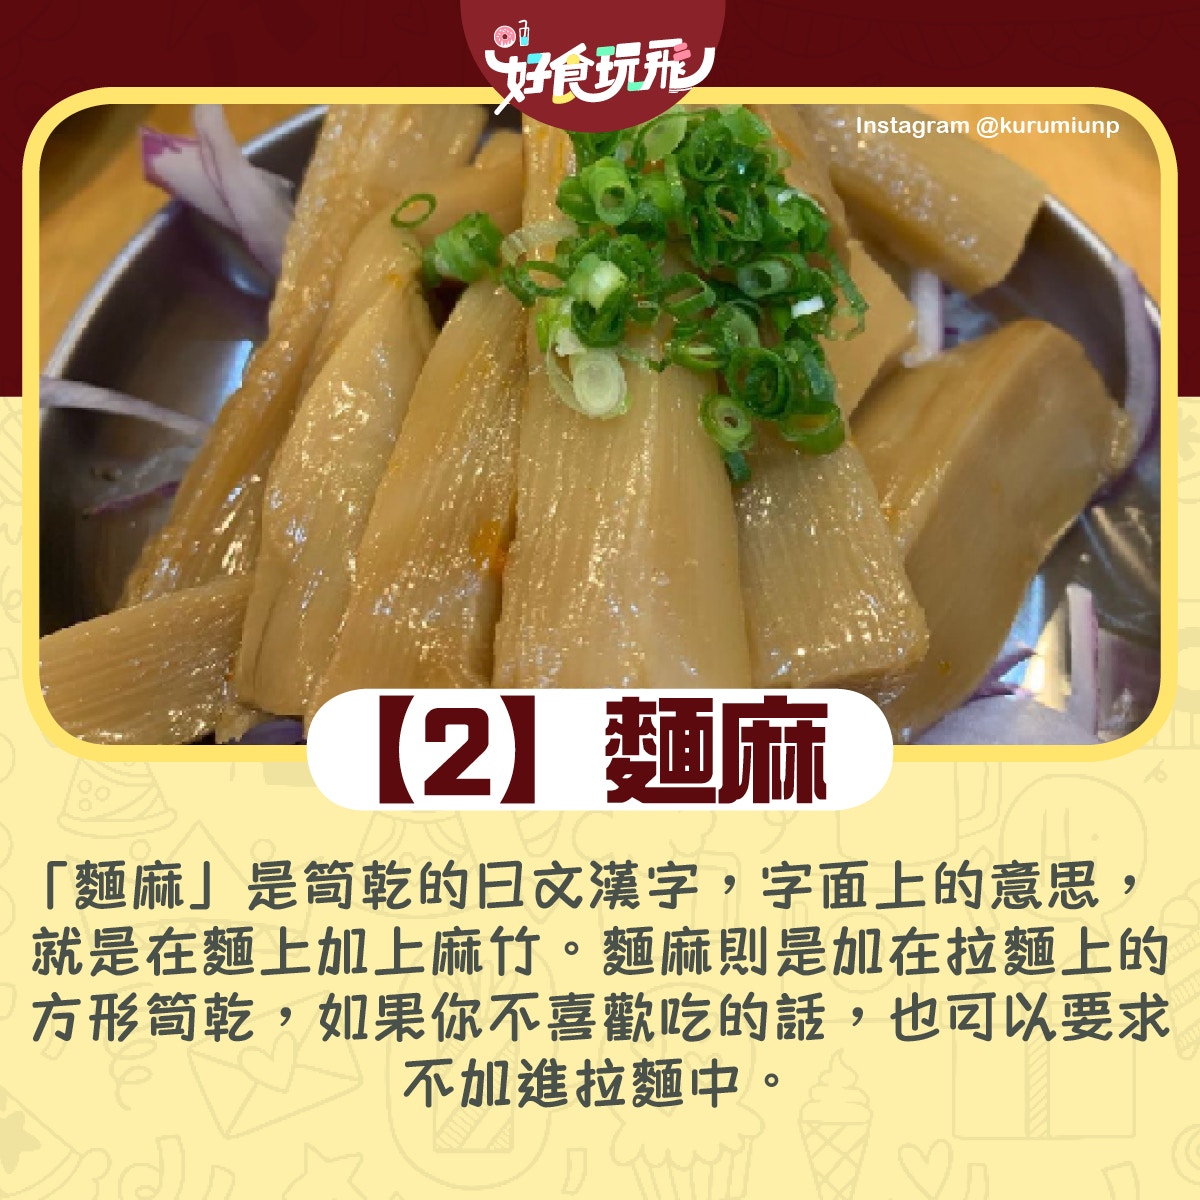 14組食物日文漢字測你是否日本達人 饂飩 並非雲吞 旅遊通識